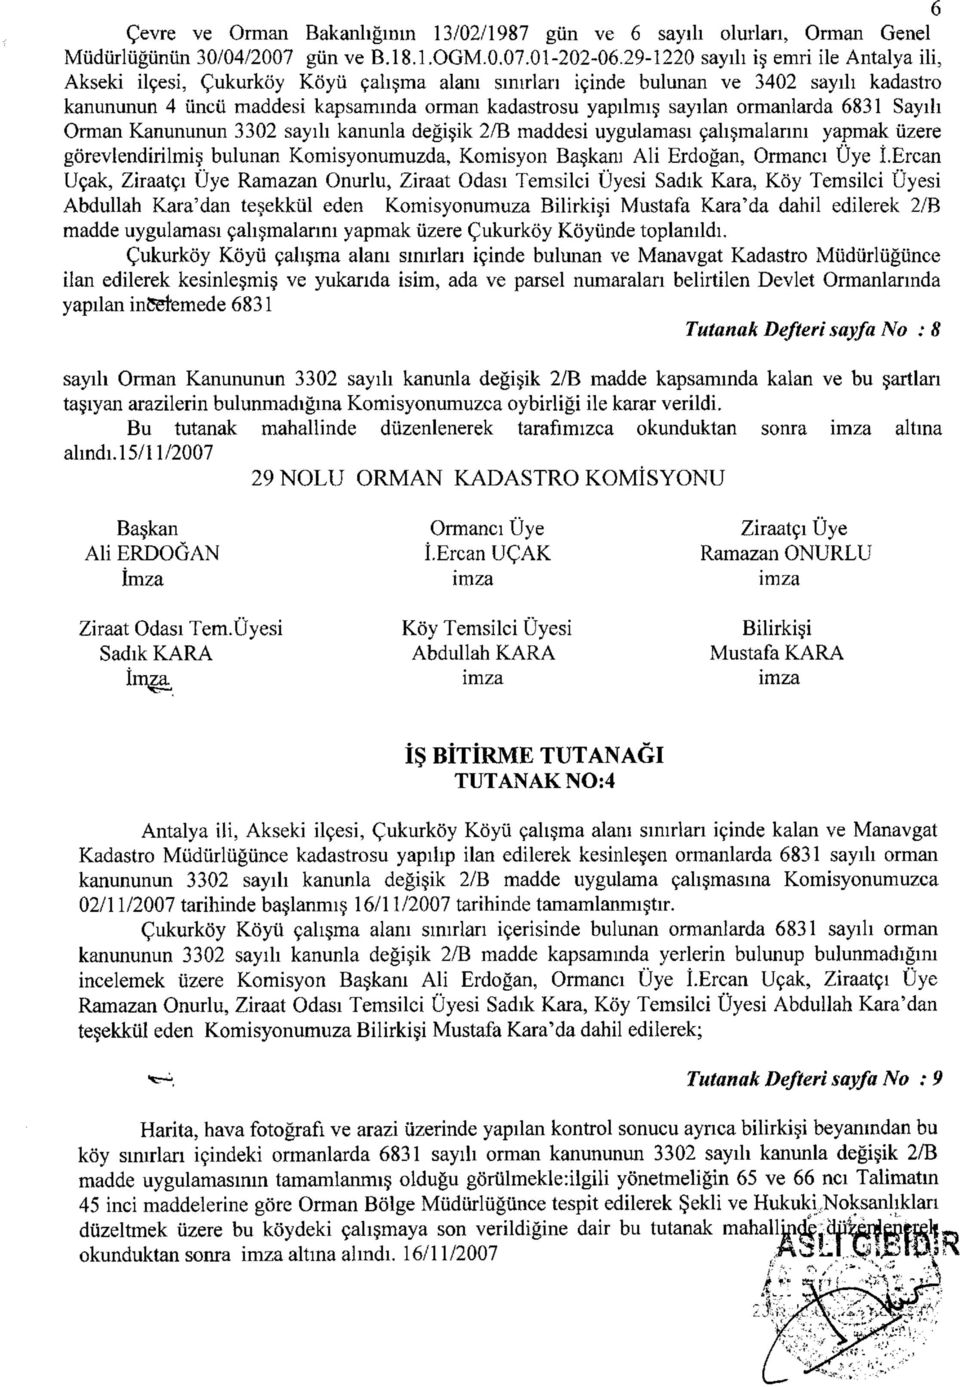 sayılan ormanlarda 6831 Sayılı Orman Kanununun 3302 sayılı kanunla değişik 2/B maddesi uygulaması çalışmalarını yapmak üzere görevlendirilmiş bulunan Komisyonumuzda, Komisyon ı Ali Erdoğan, İ.